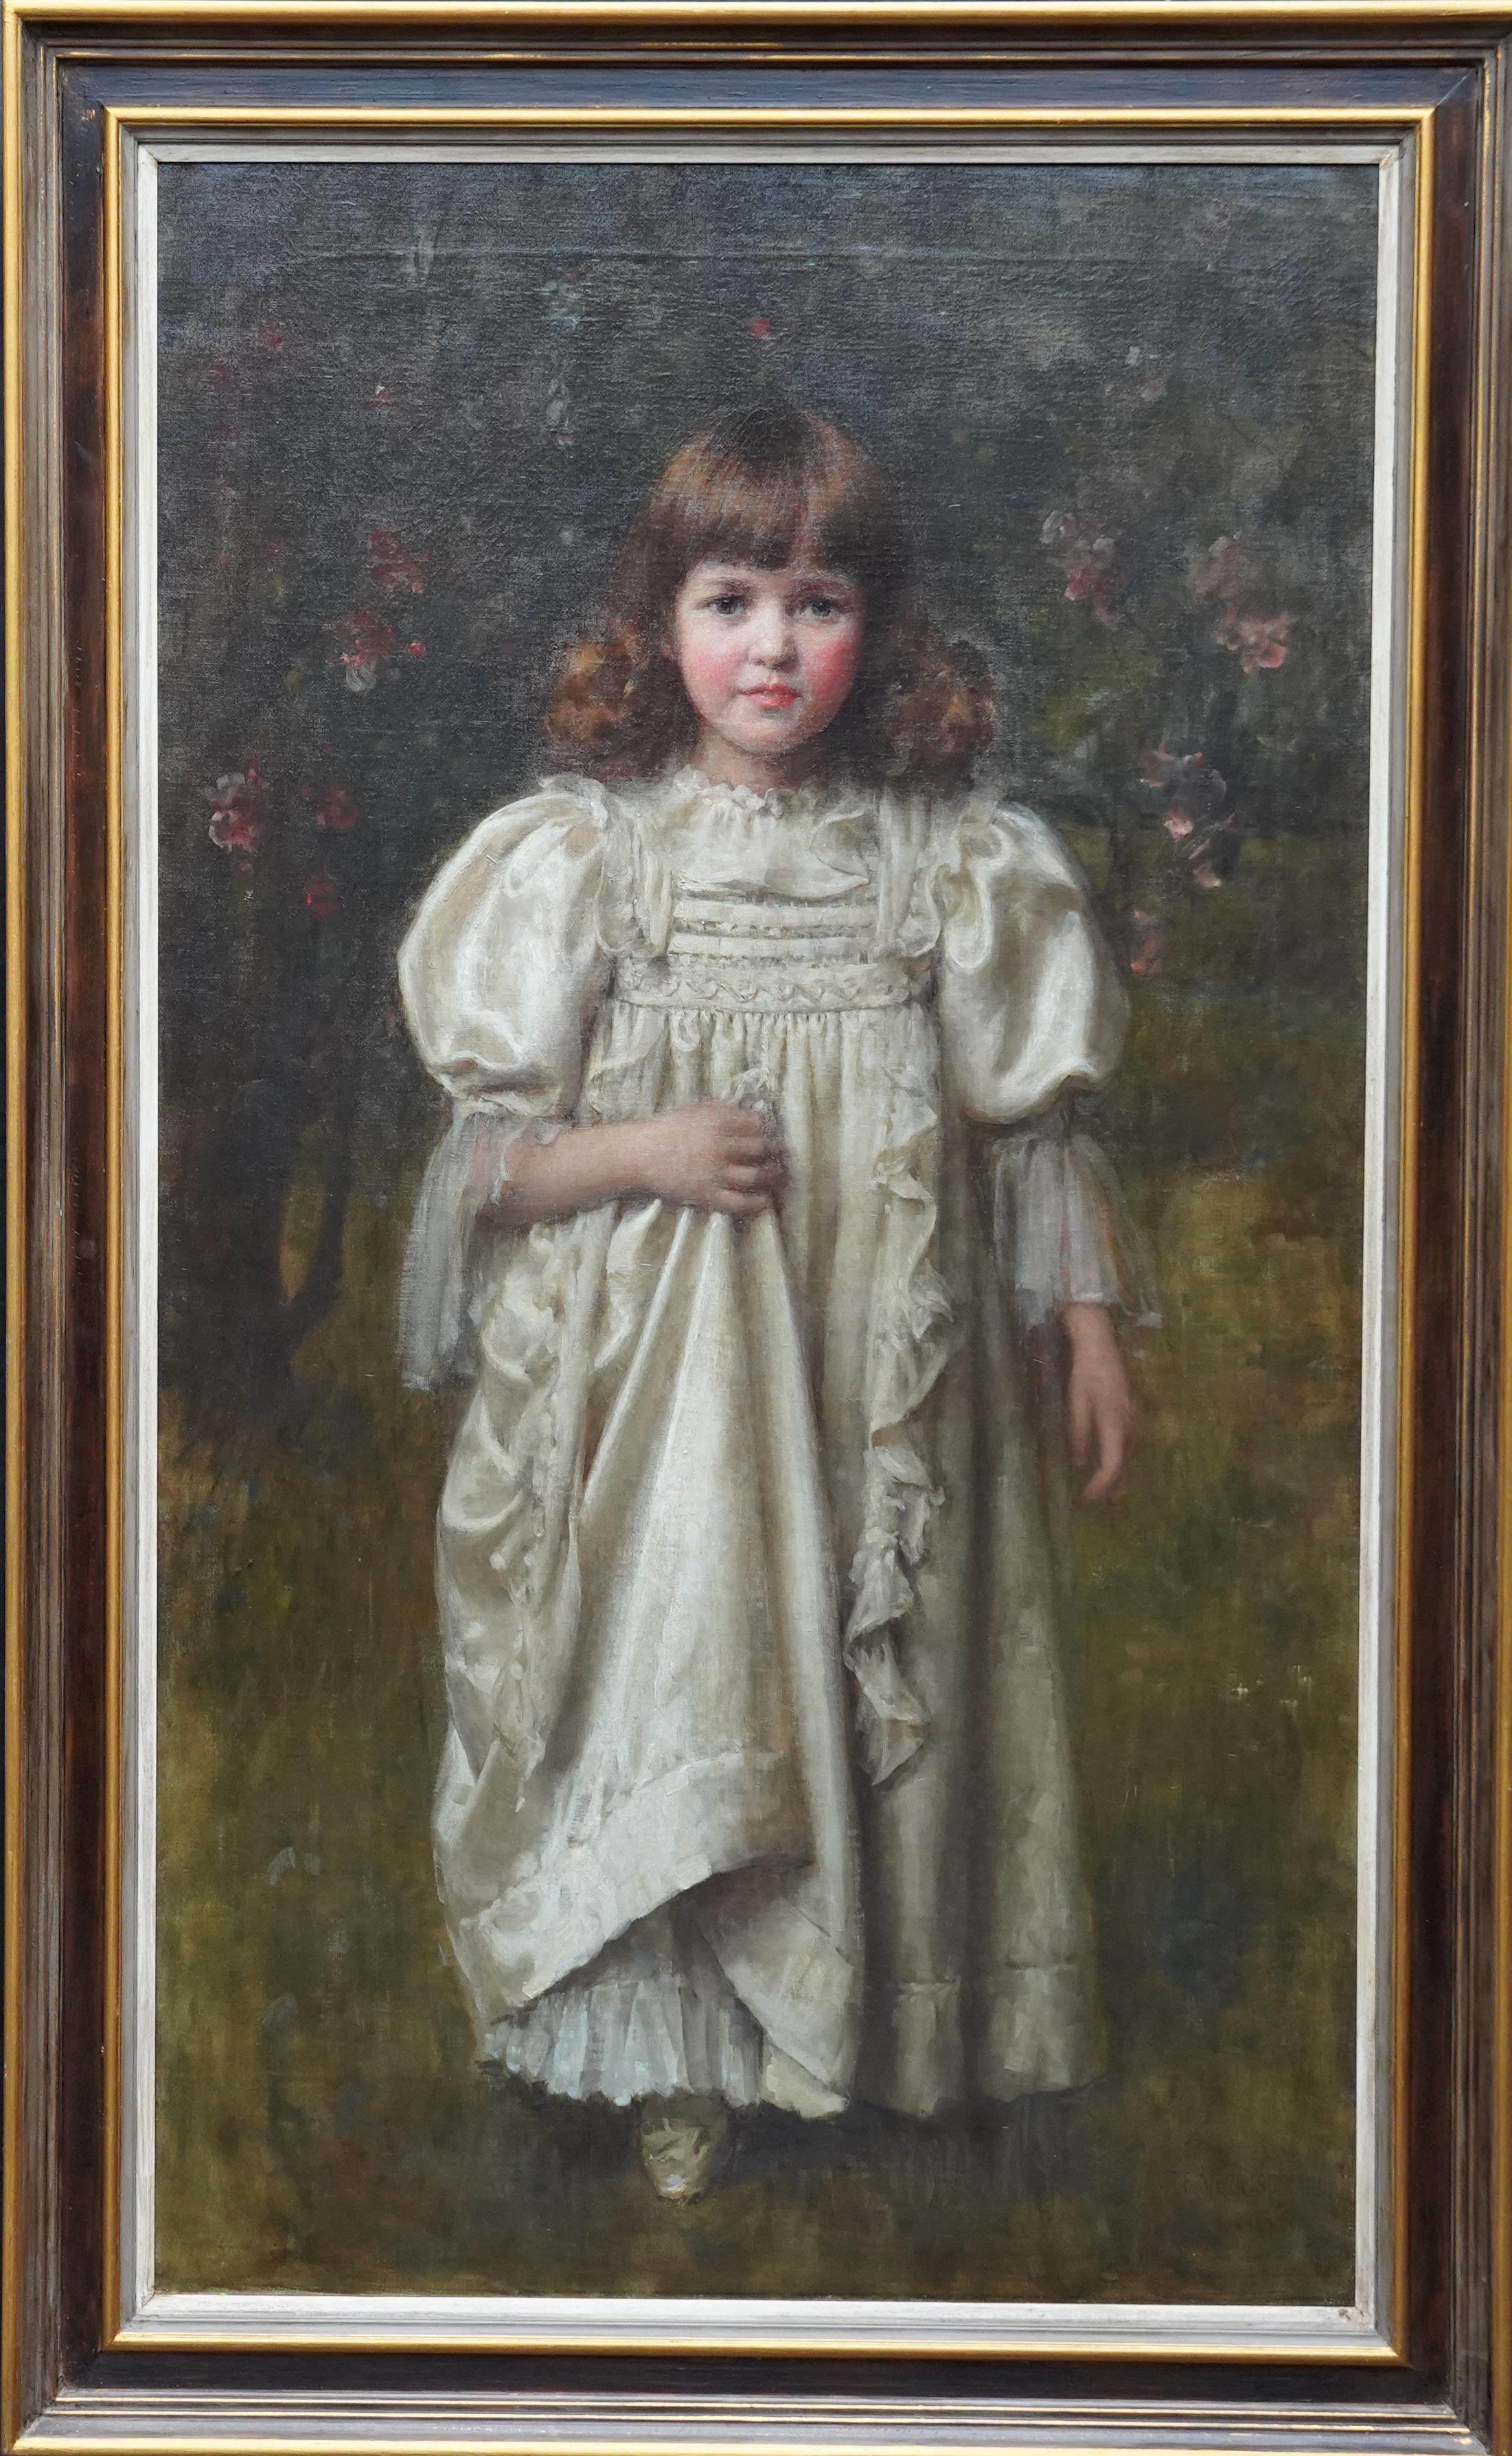 Robert Edward Morrison Portrait Painting – Porträt eines jungen Mädchens in einem weißen Kleid – britisches edwardianisches Ölgemälde